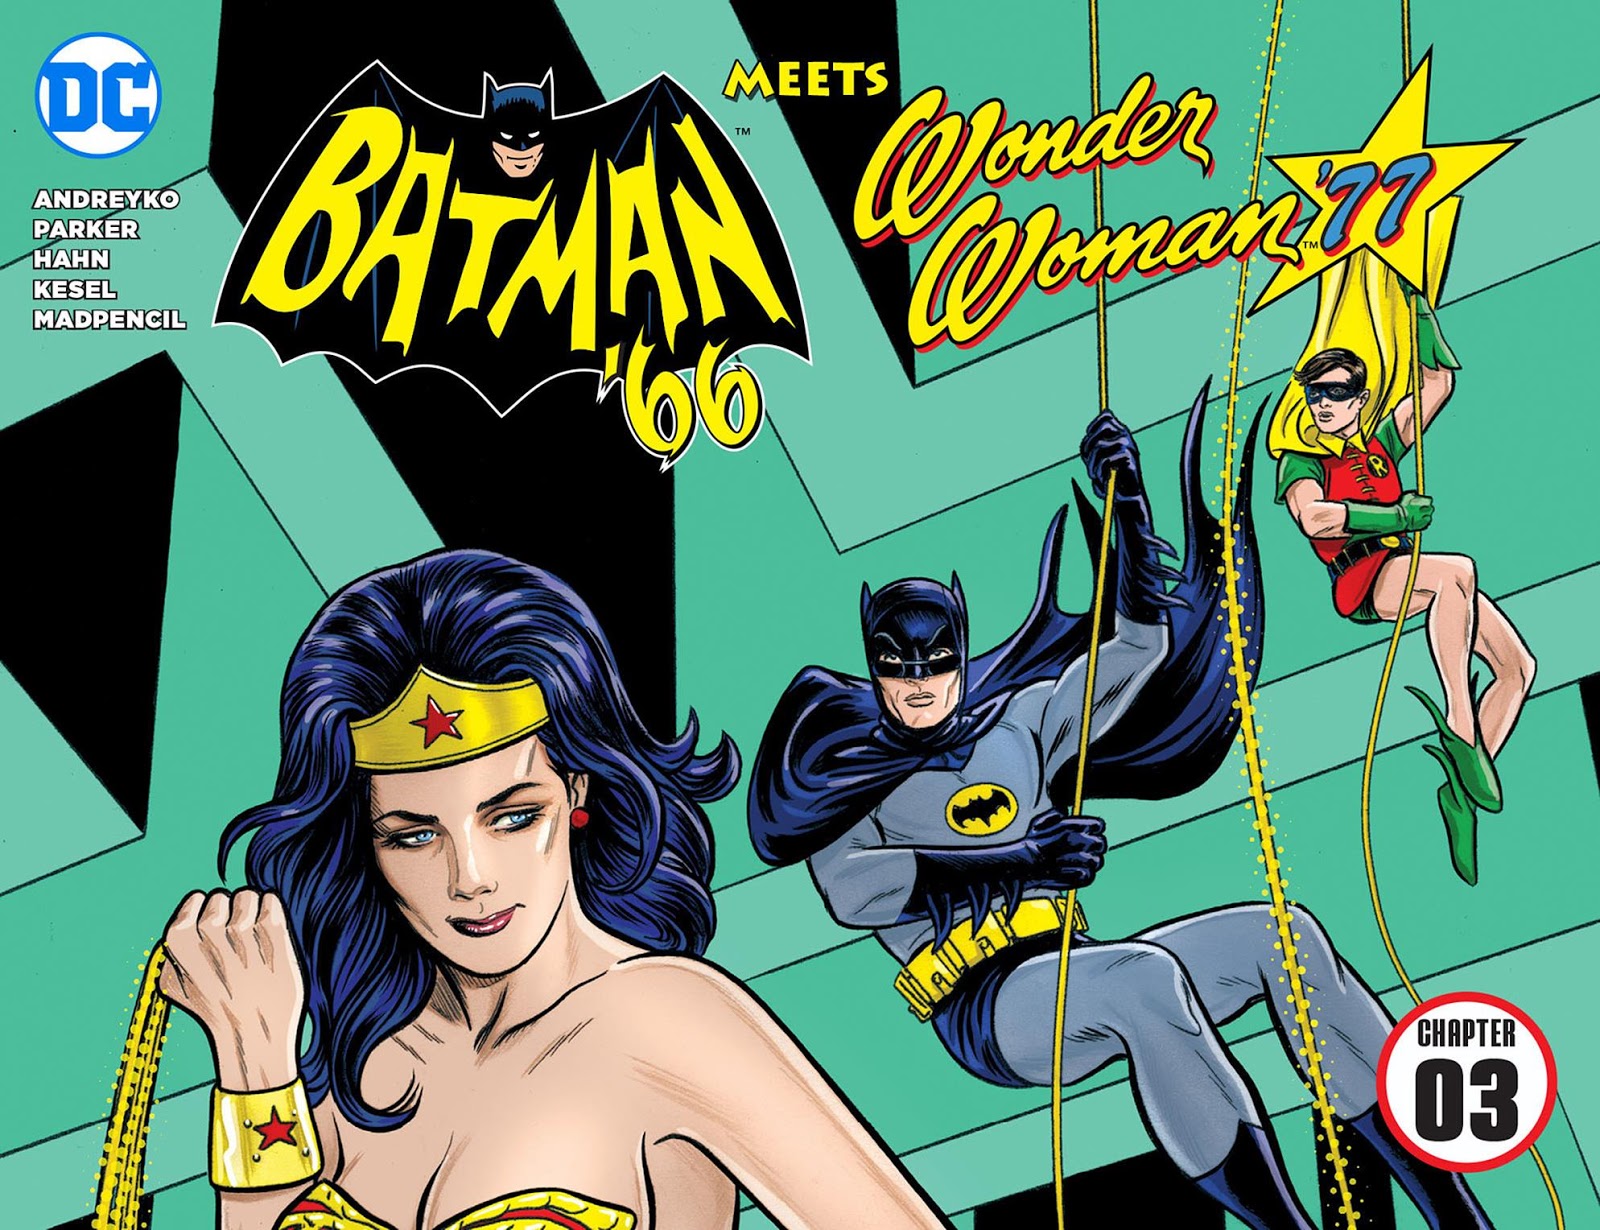 Weird Science DC Comics: Batman '66 Meets Wonder Woman '77 Chapter #3 Review